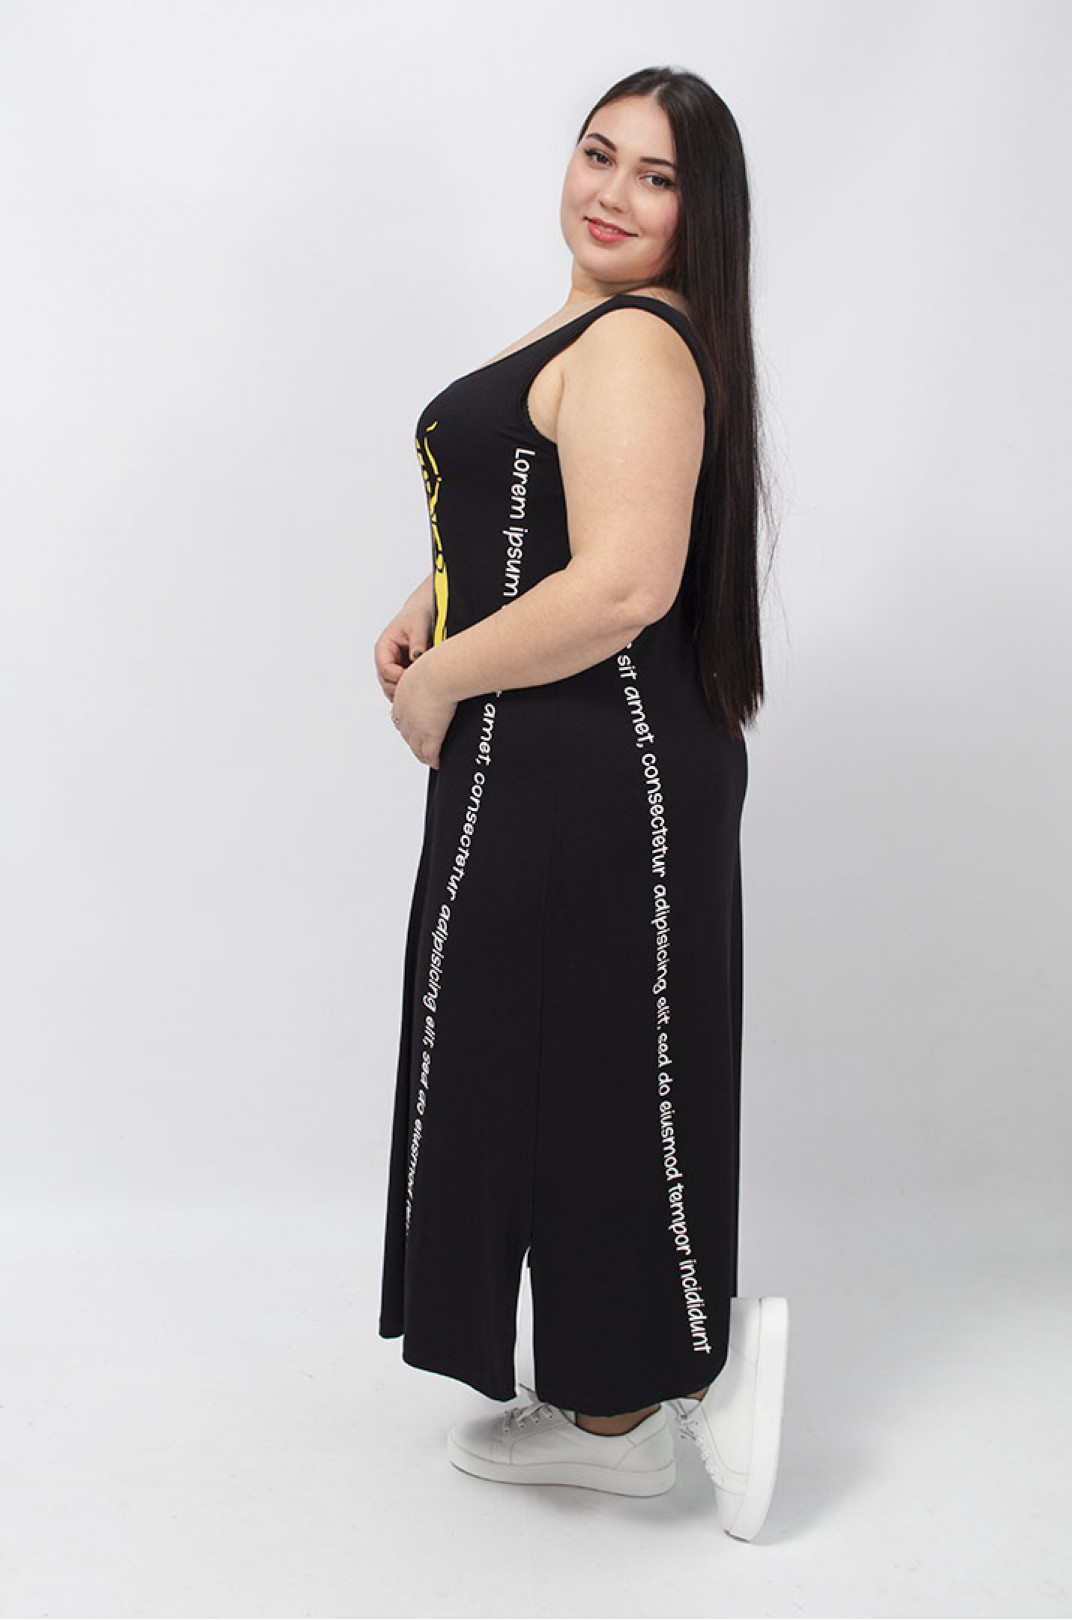 Сарафан-сукня з вертикальними написами, стразами та розрізами батал